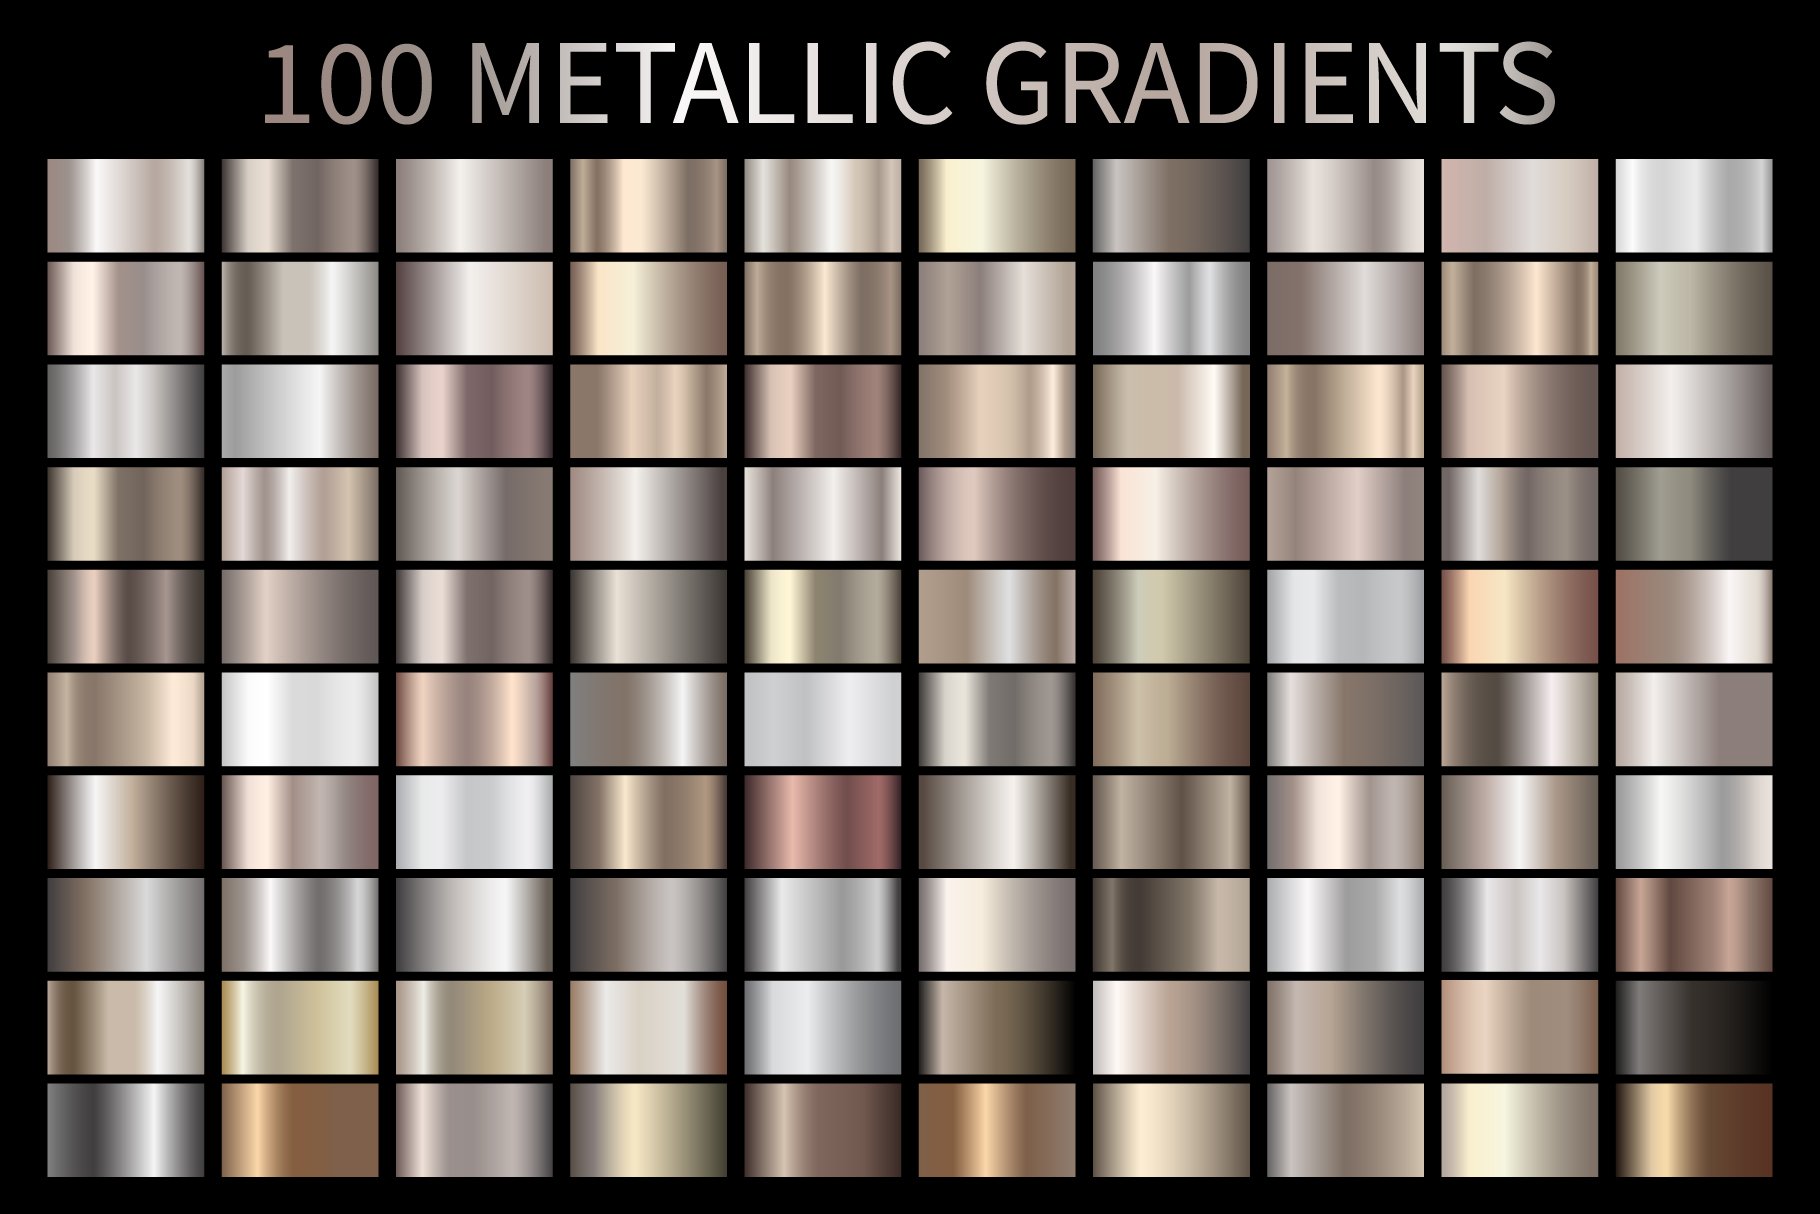 metallicgradientspreview 107